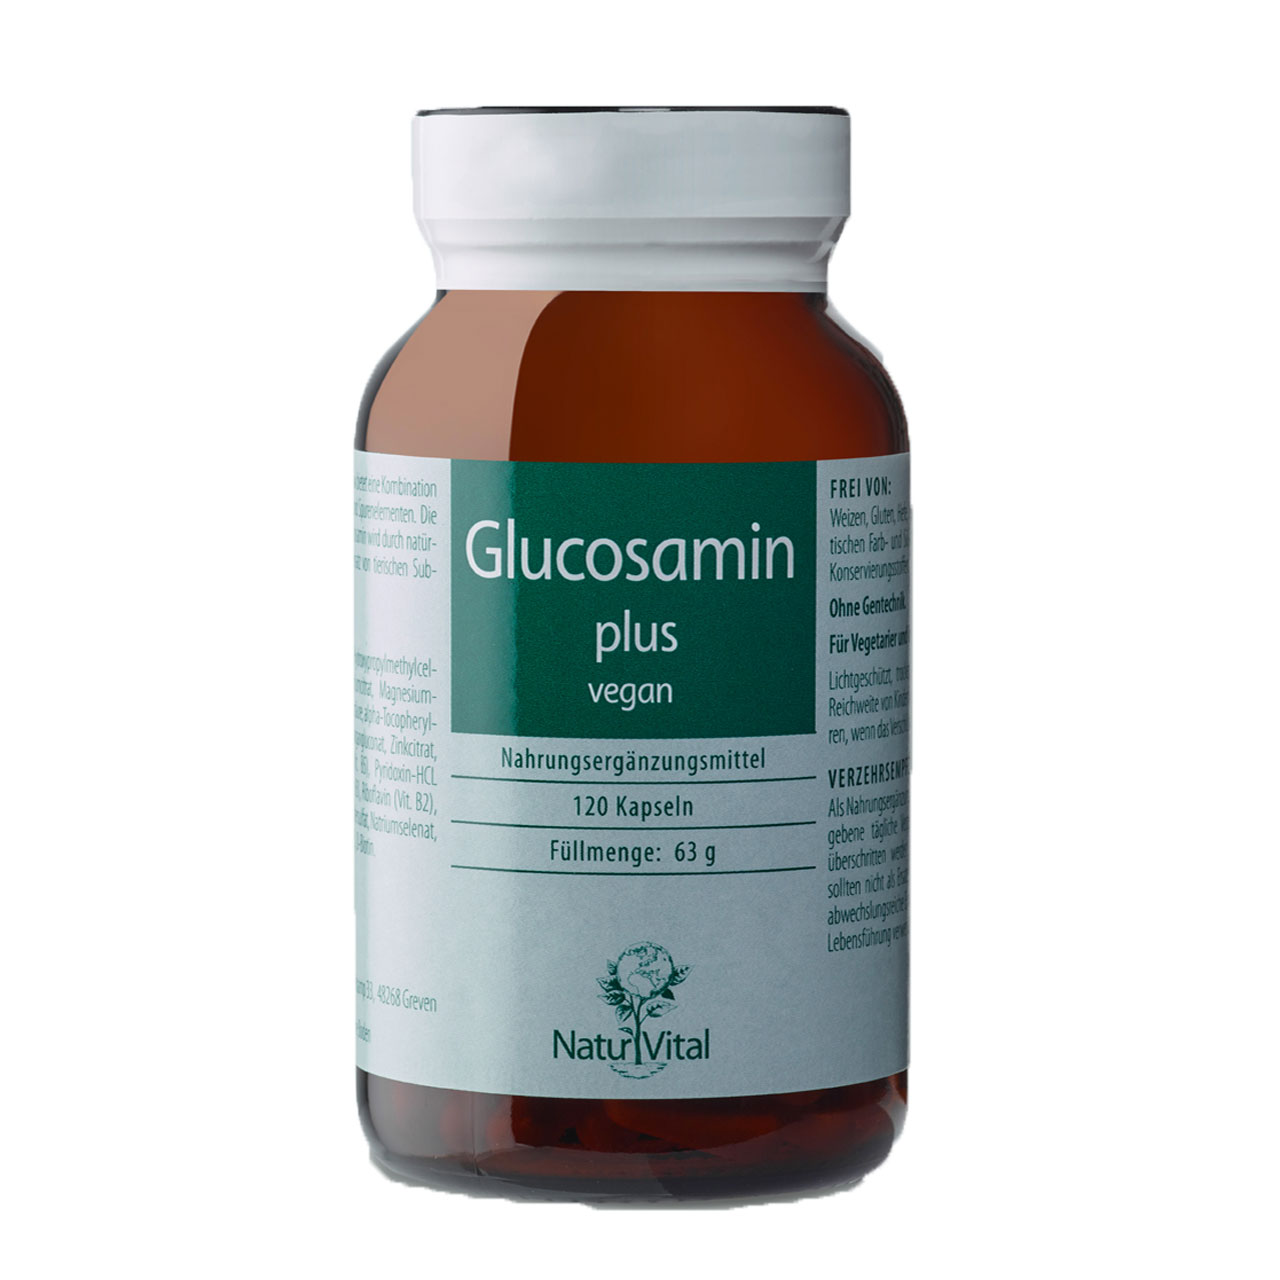 Glucosamin plus vegan von Natur Vital beinhaltet 120 Kapseln